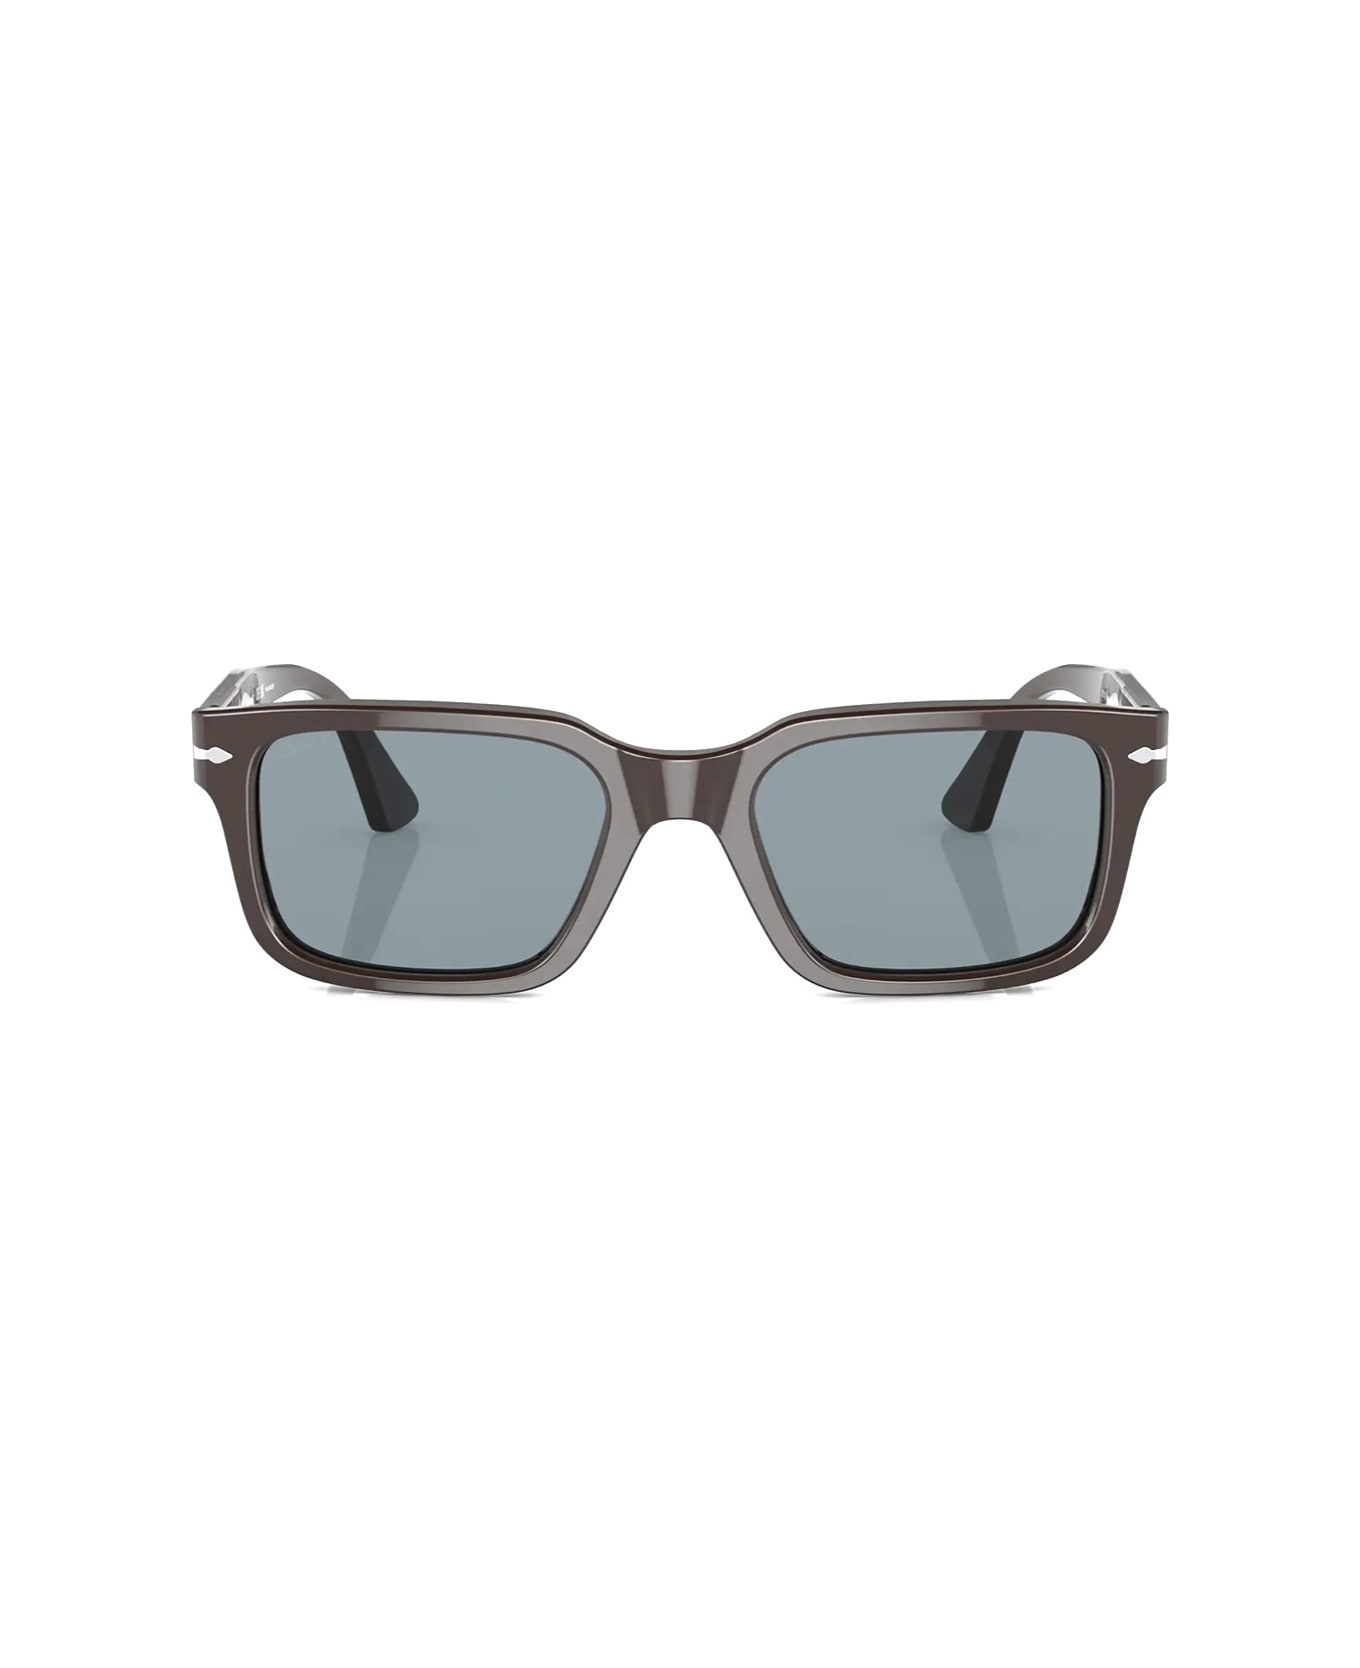 Persol Po3272s 11743r Sunglasses - Marrone